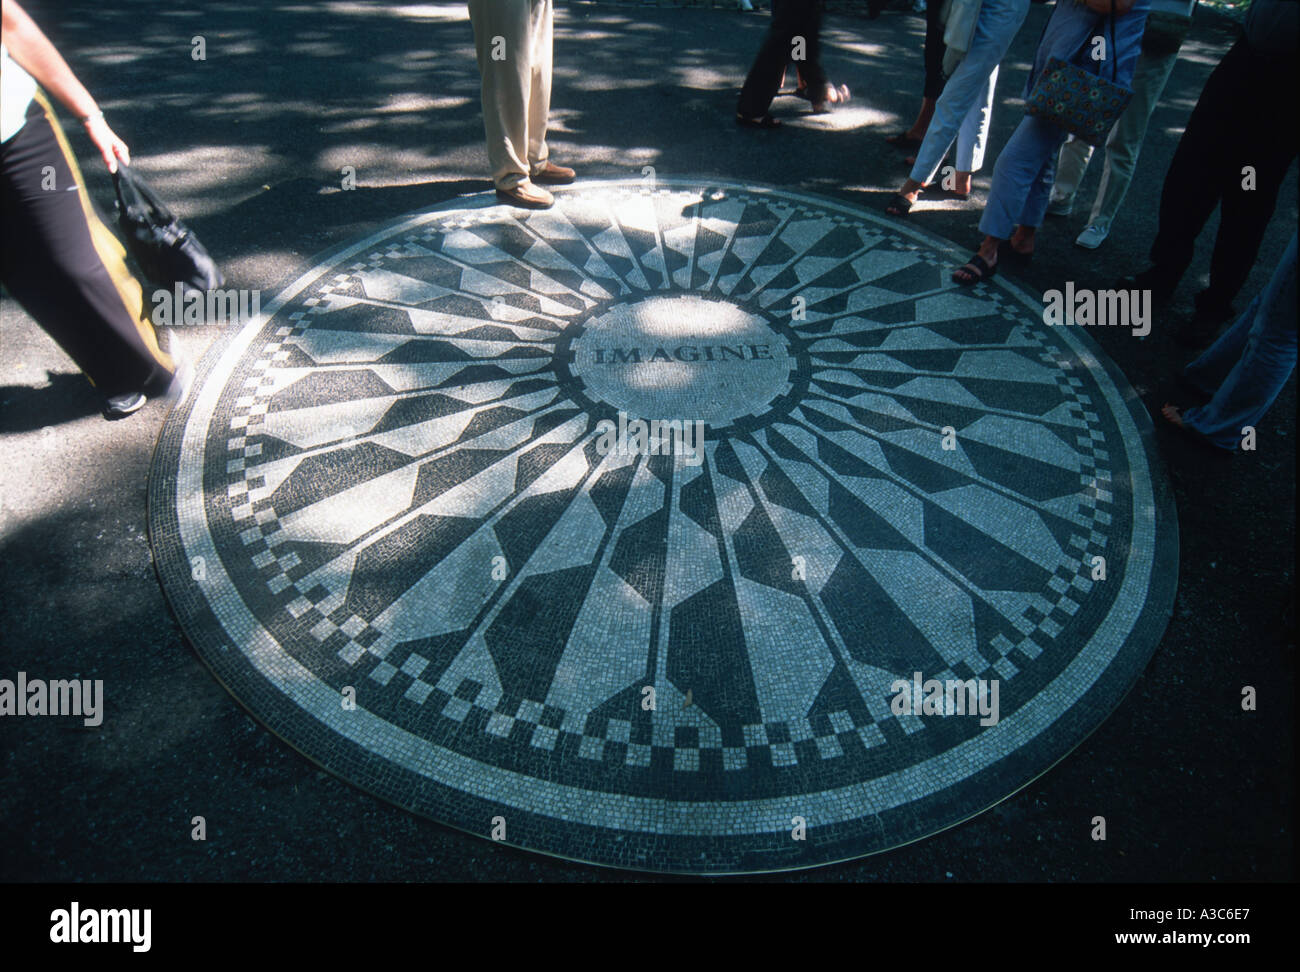 Les touristes à la recherche chez imagine John Lennon Memorial pour la mosaïque de Strawberry Fields à Central Park Manhattan New York USA Banque D'Images